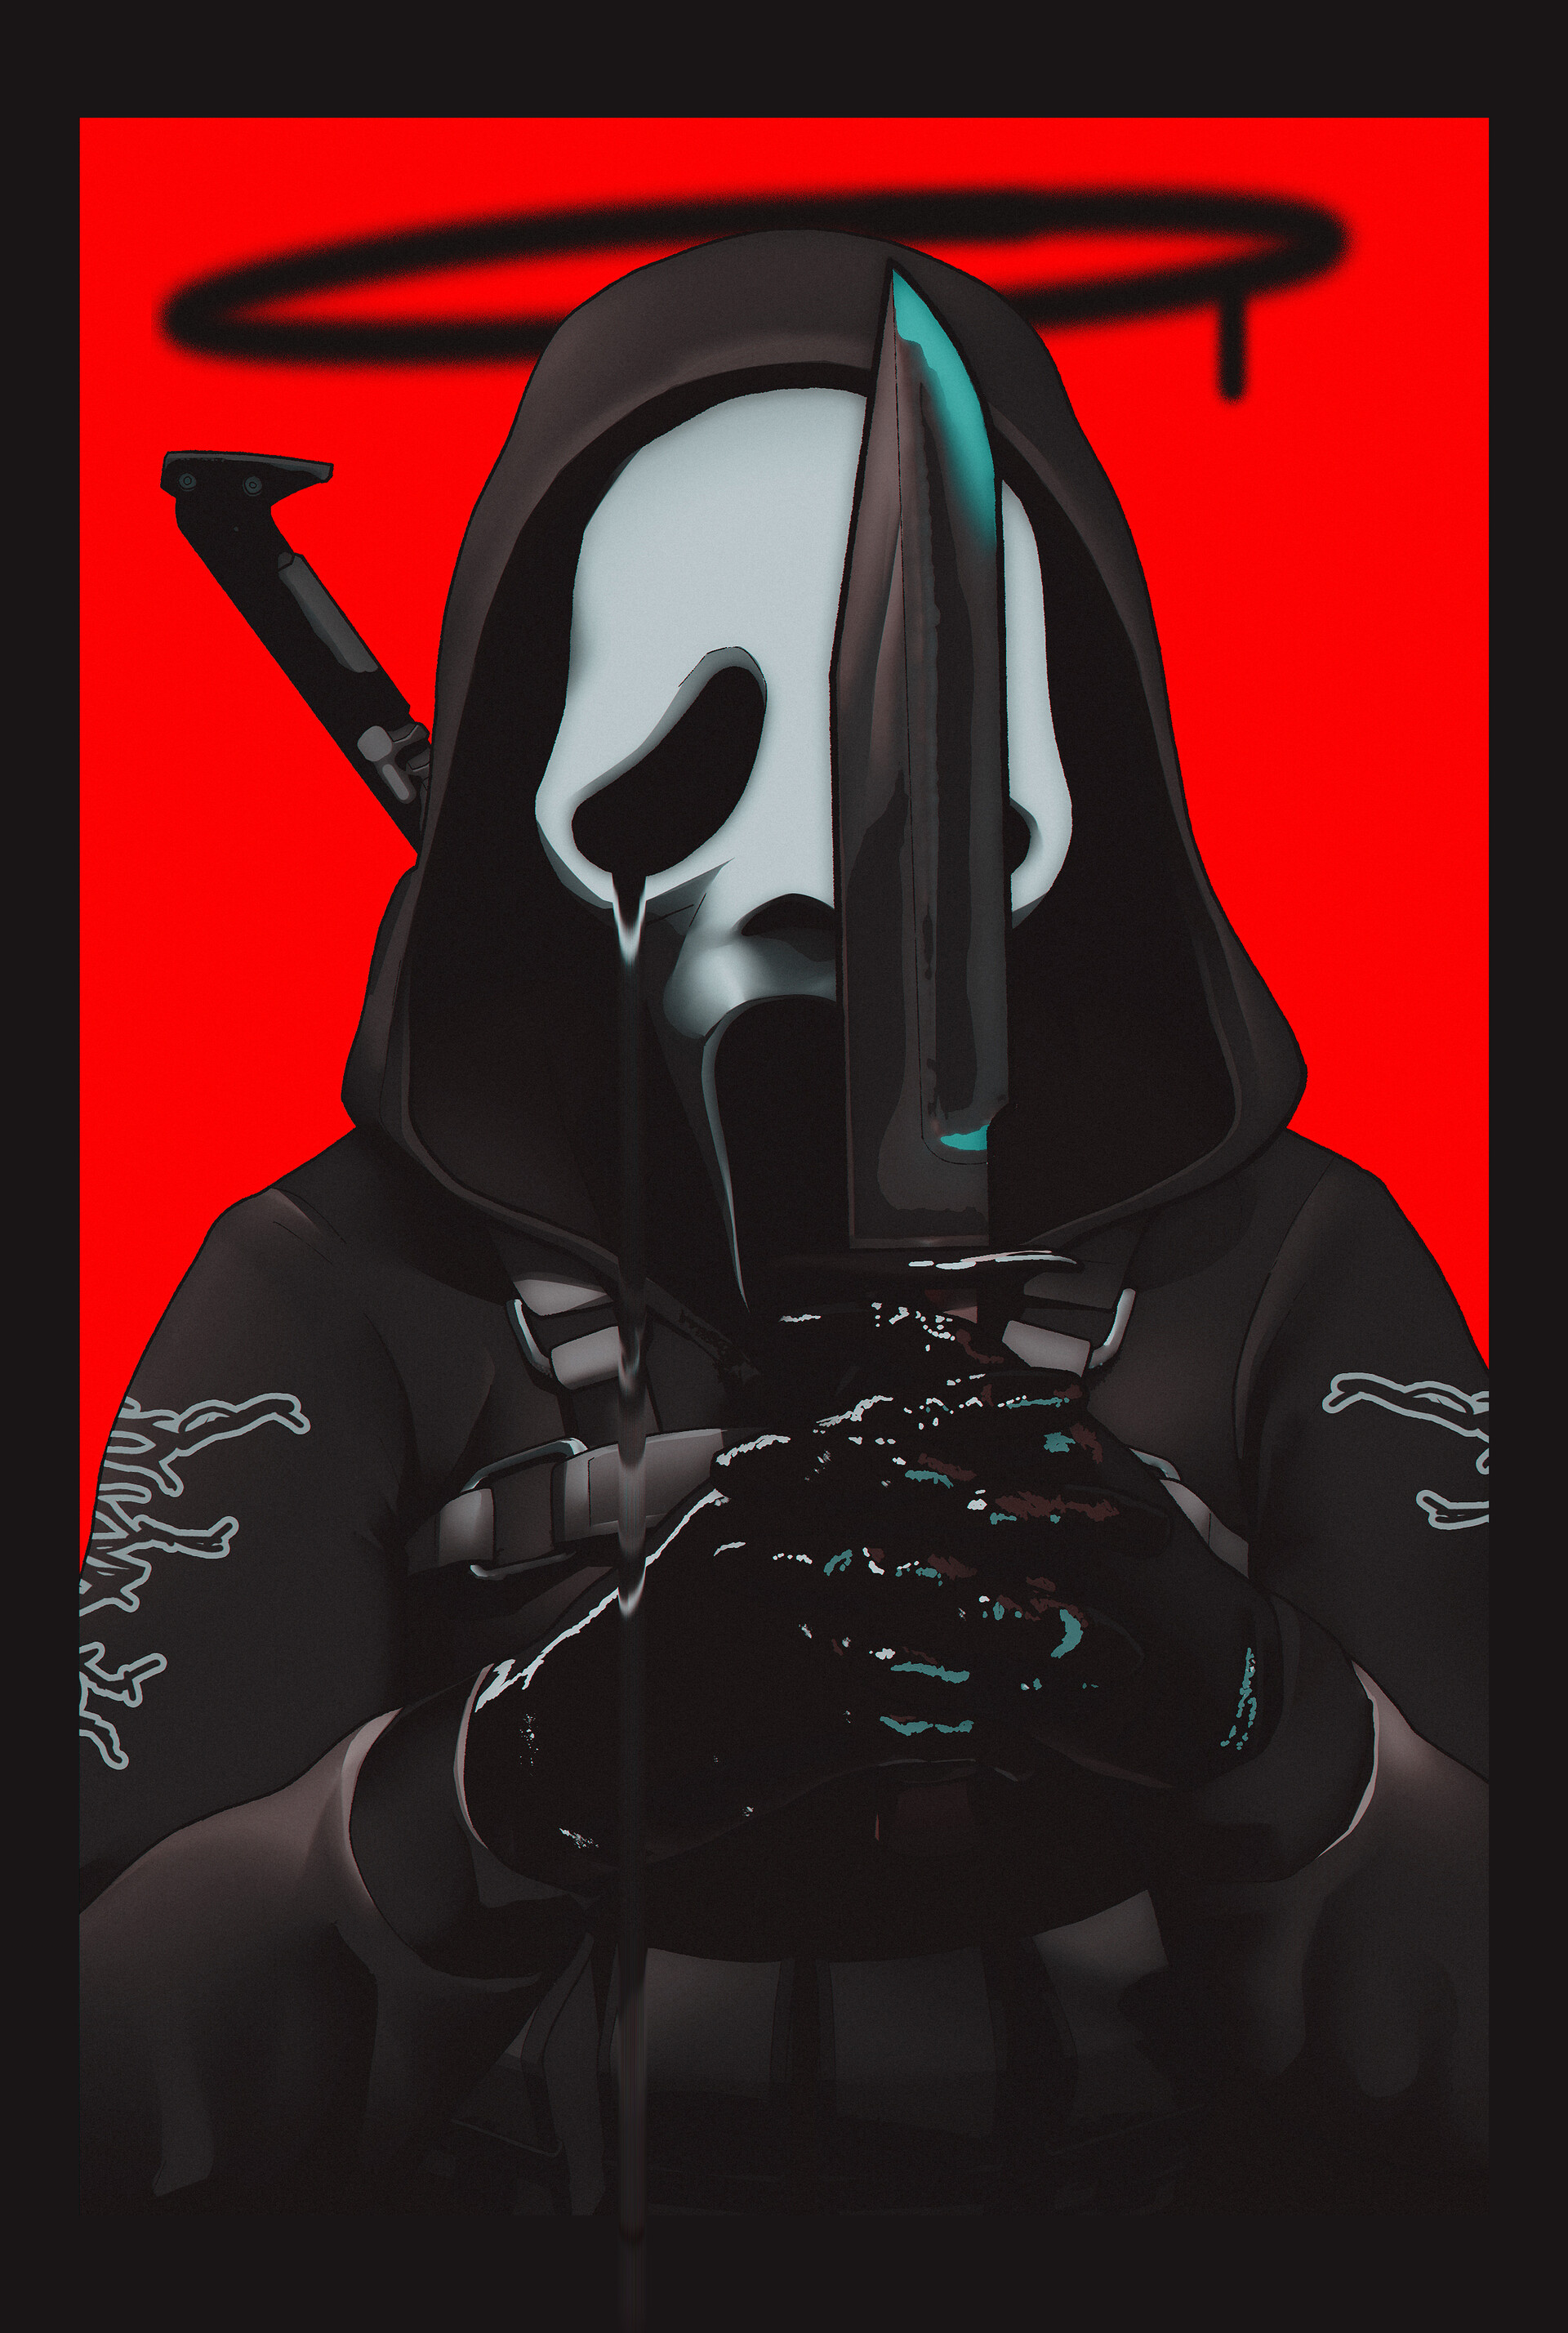 General 1920x2856 Poisonpink digital art artwork illustration Scream knife mask red background portrait portrait display hoods weapon